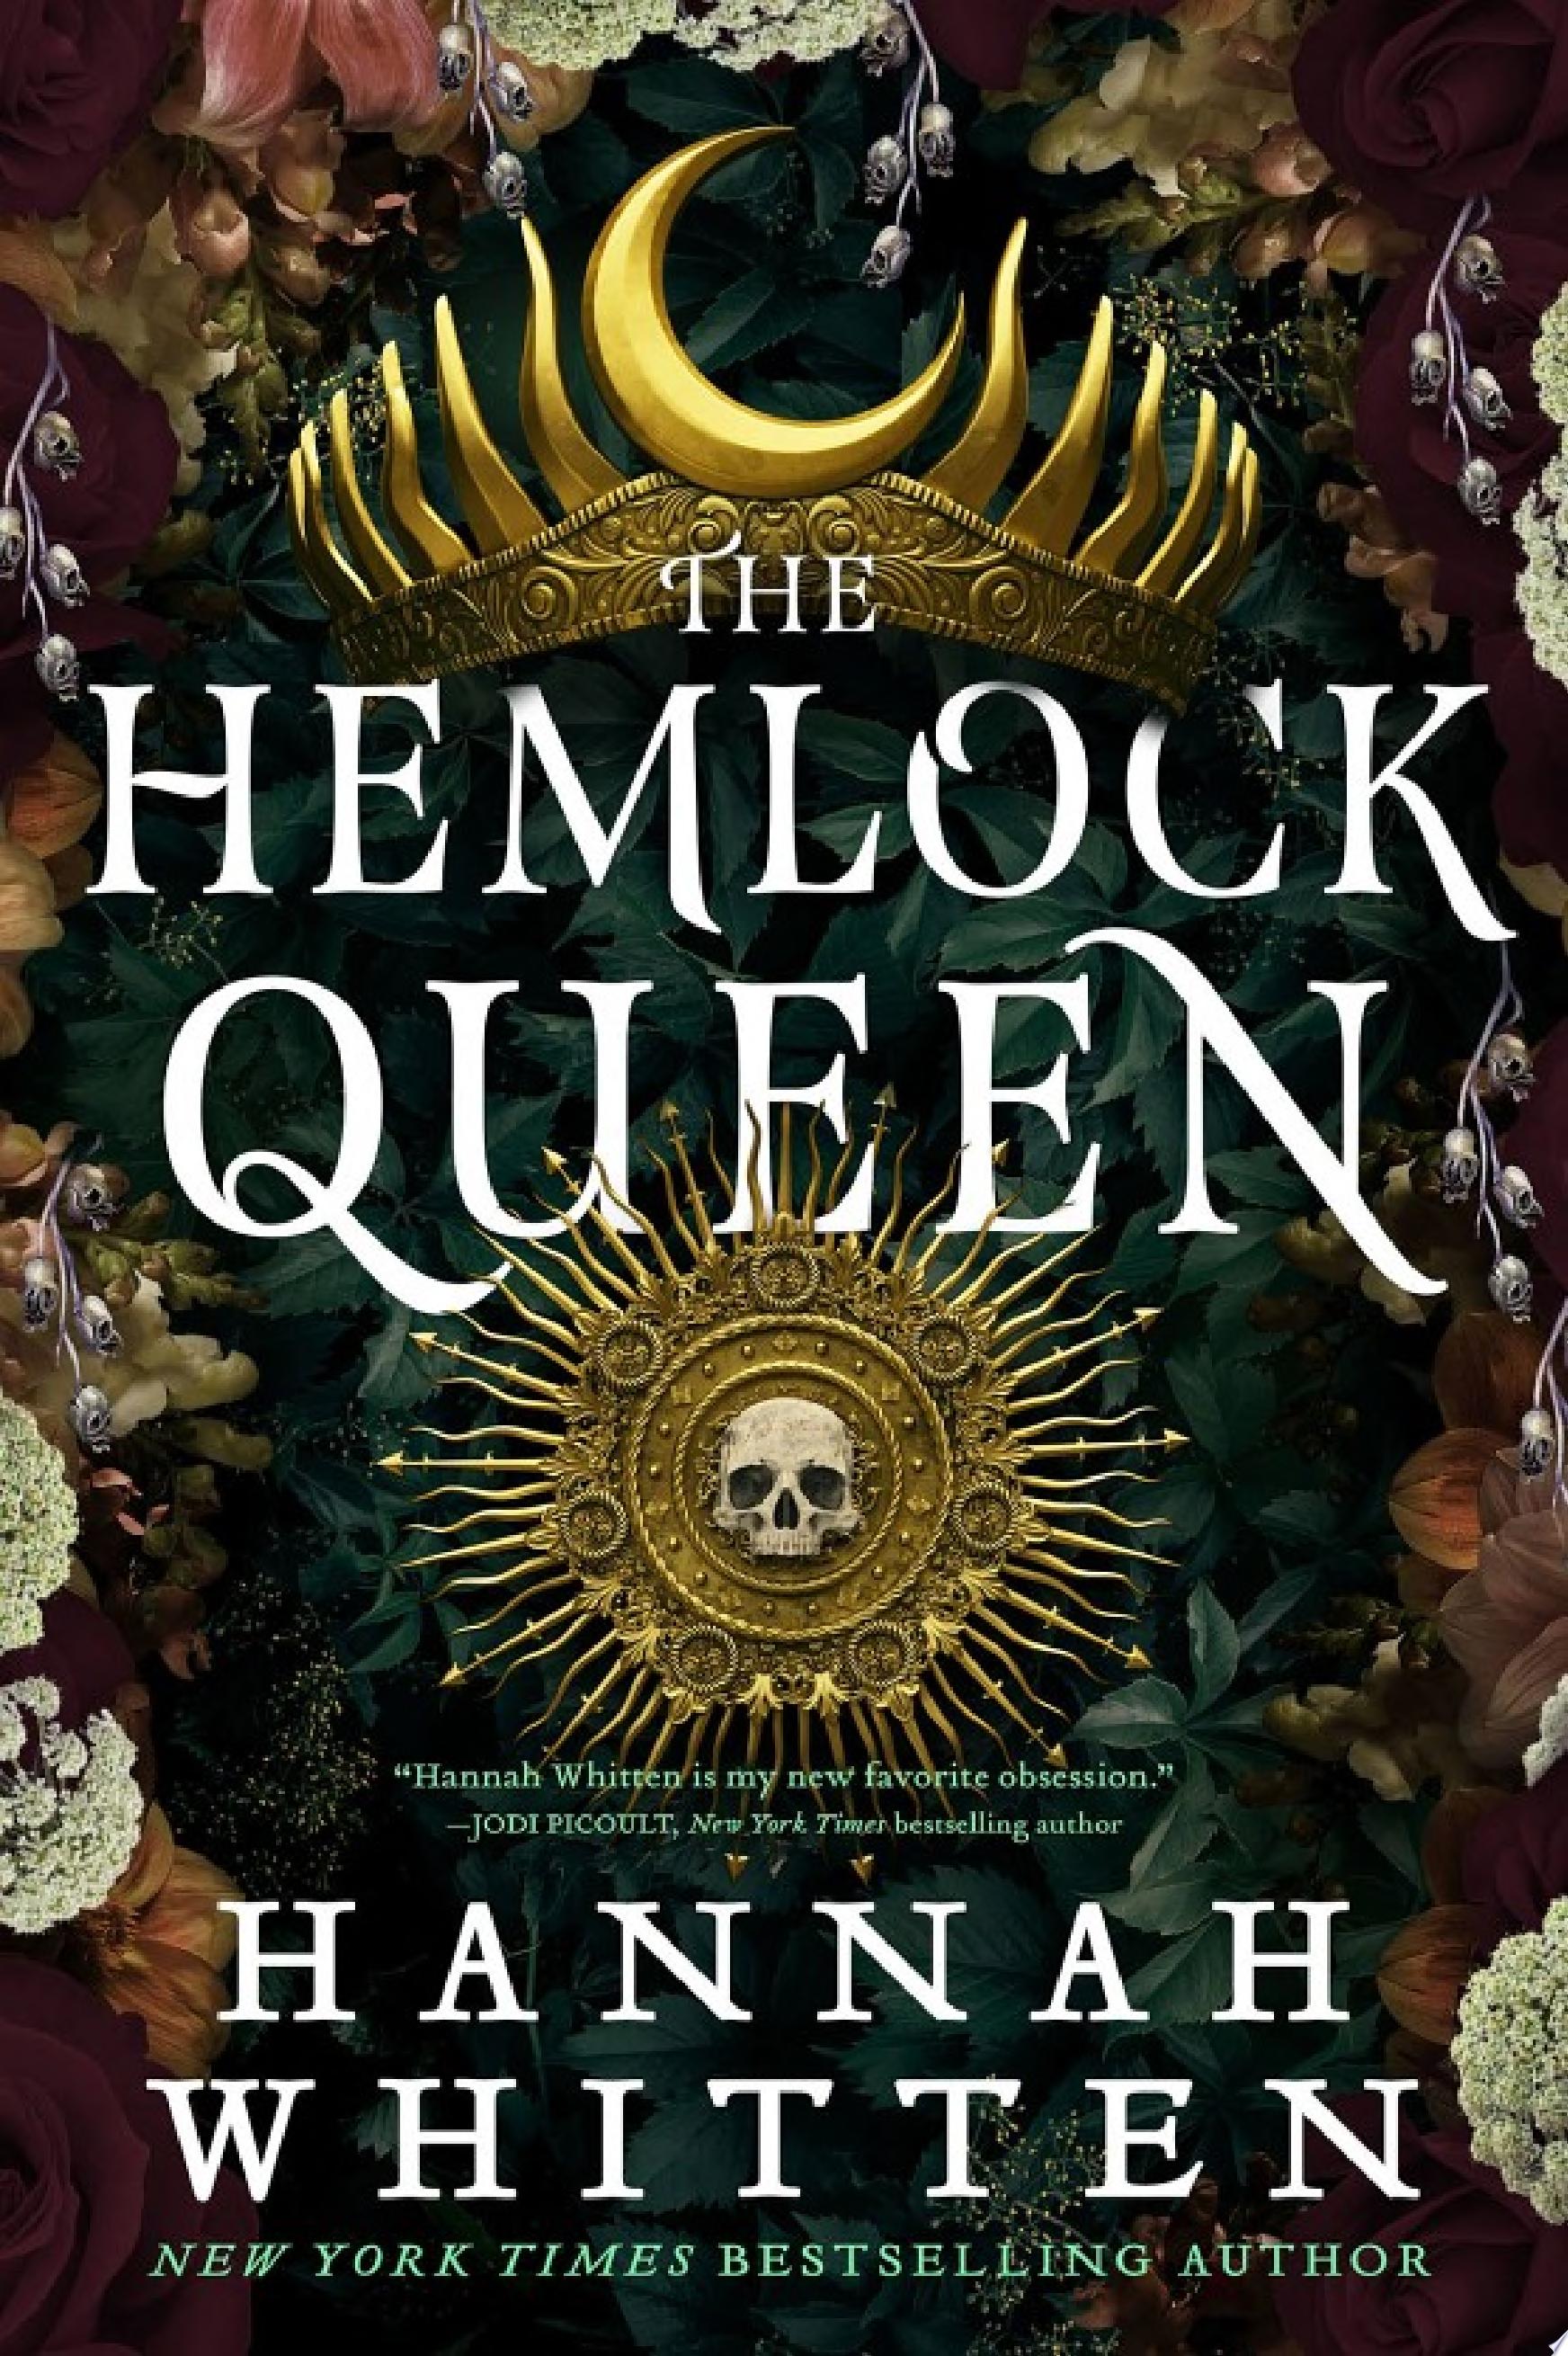 Image for "The Hemlock Queen"